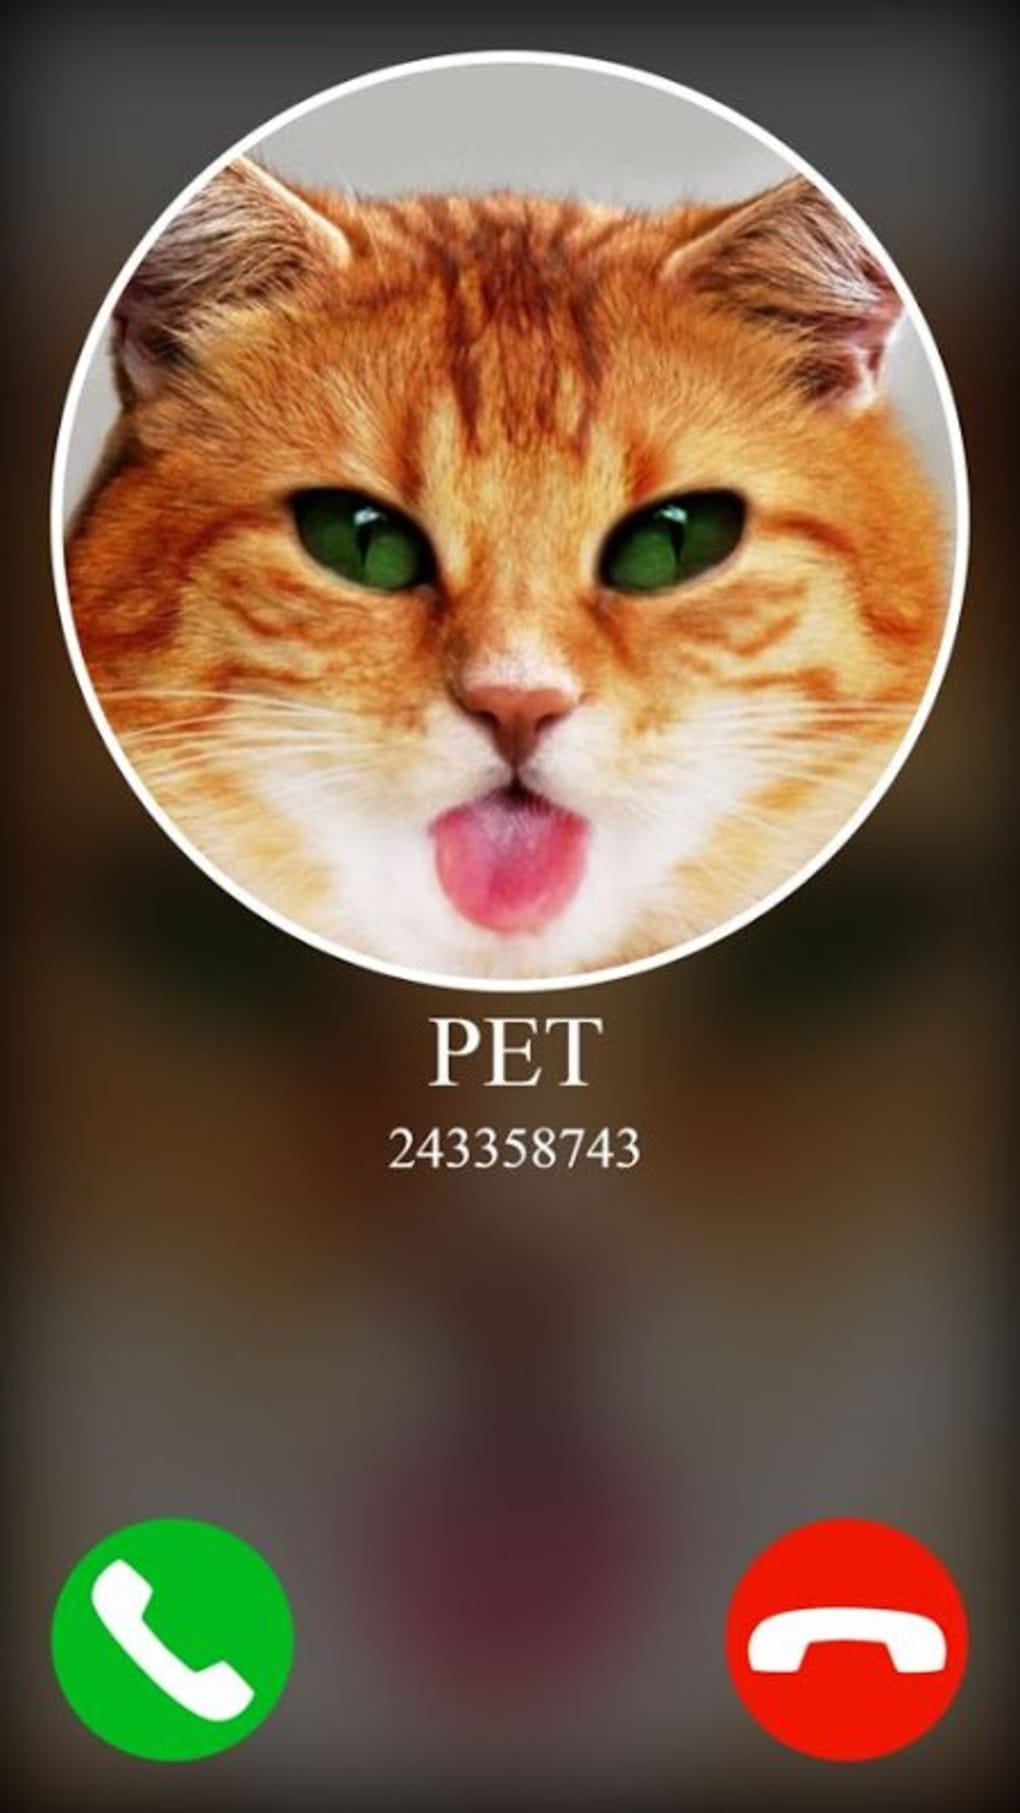 Call pet